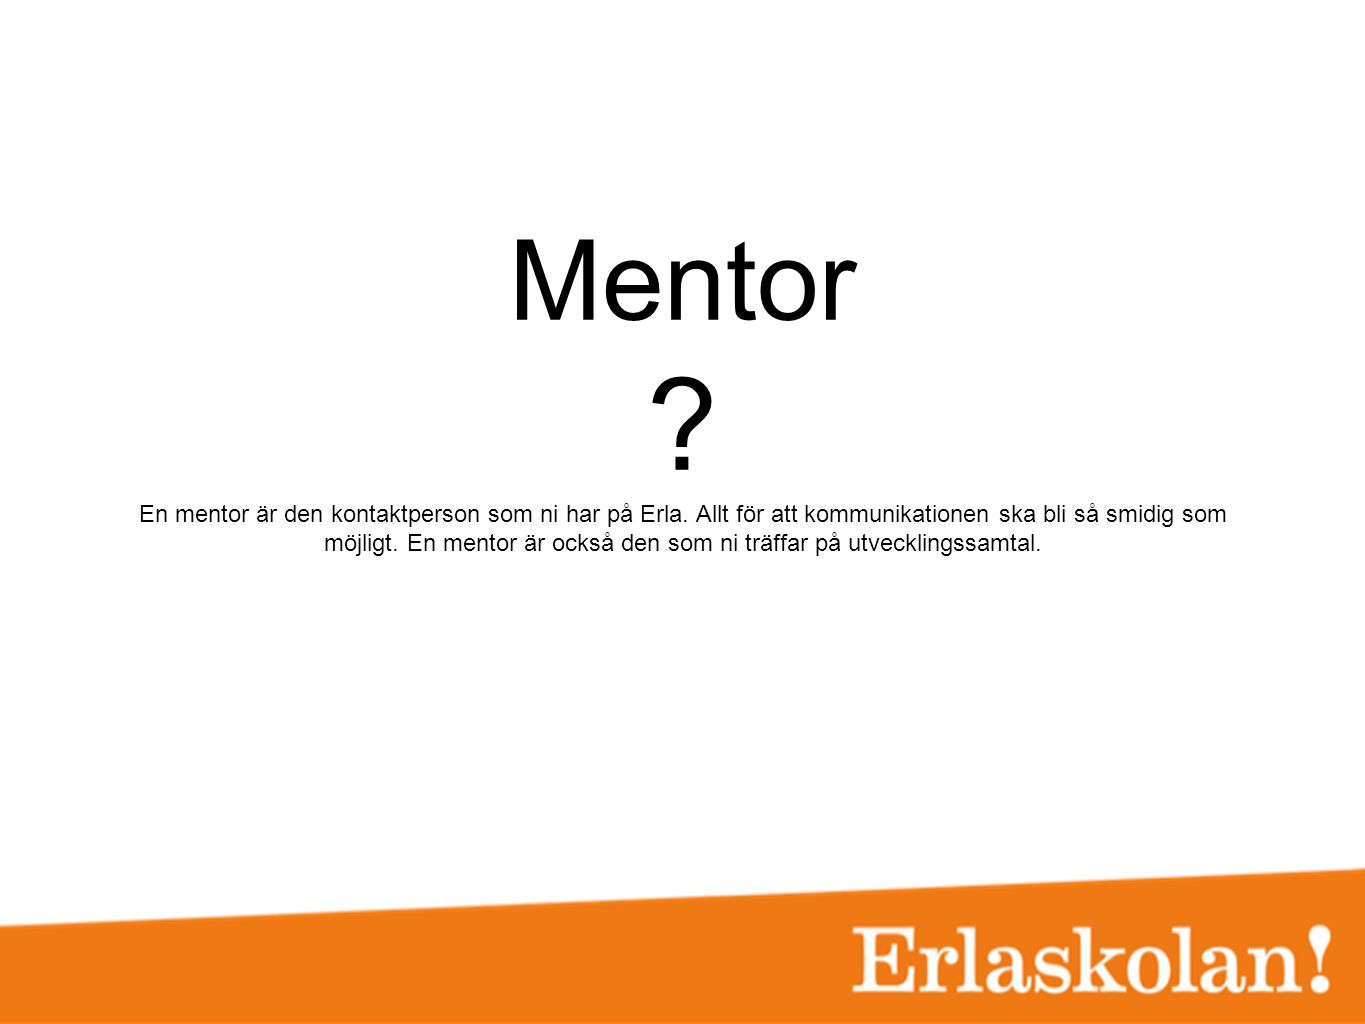 Mentor. En mentor är den kontaktperson som ni har på Erla